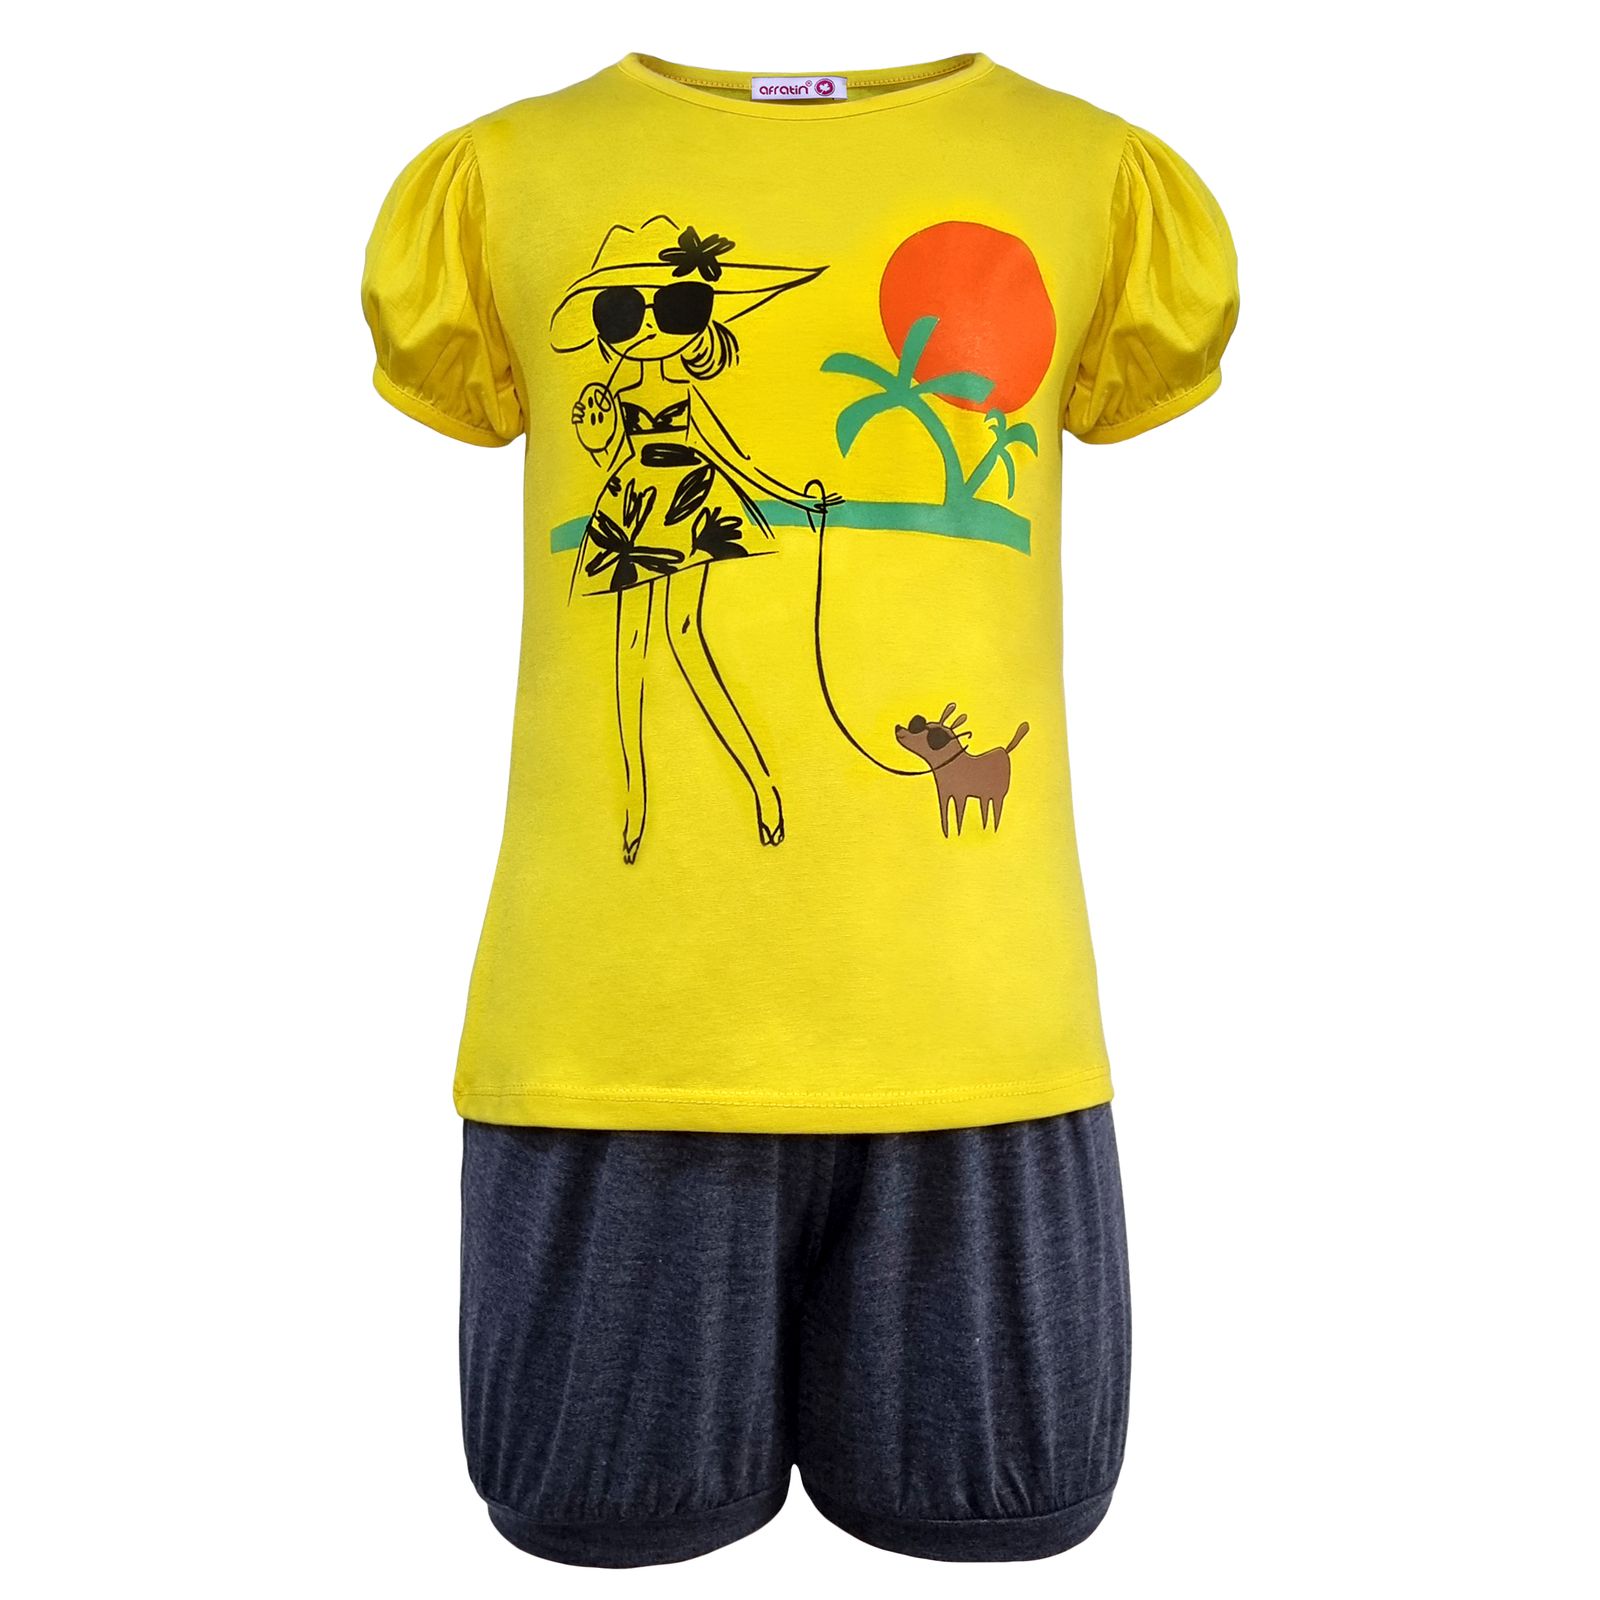 ست تی شرت و شلوارک دخترانه افراتین مدل دختر ساحلی رنگ زرد -  - 2